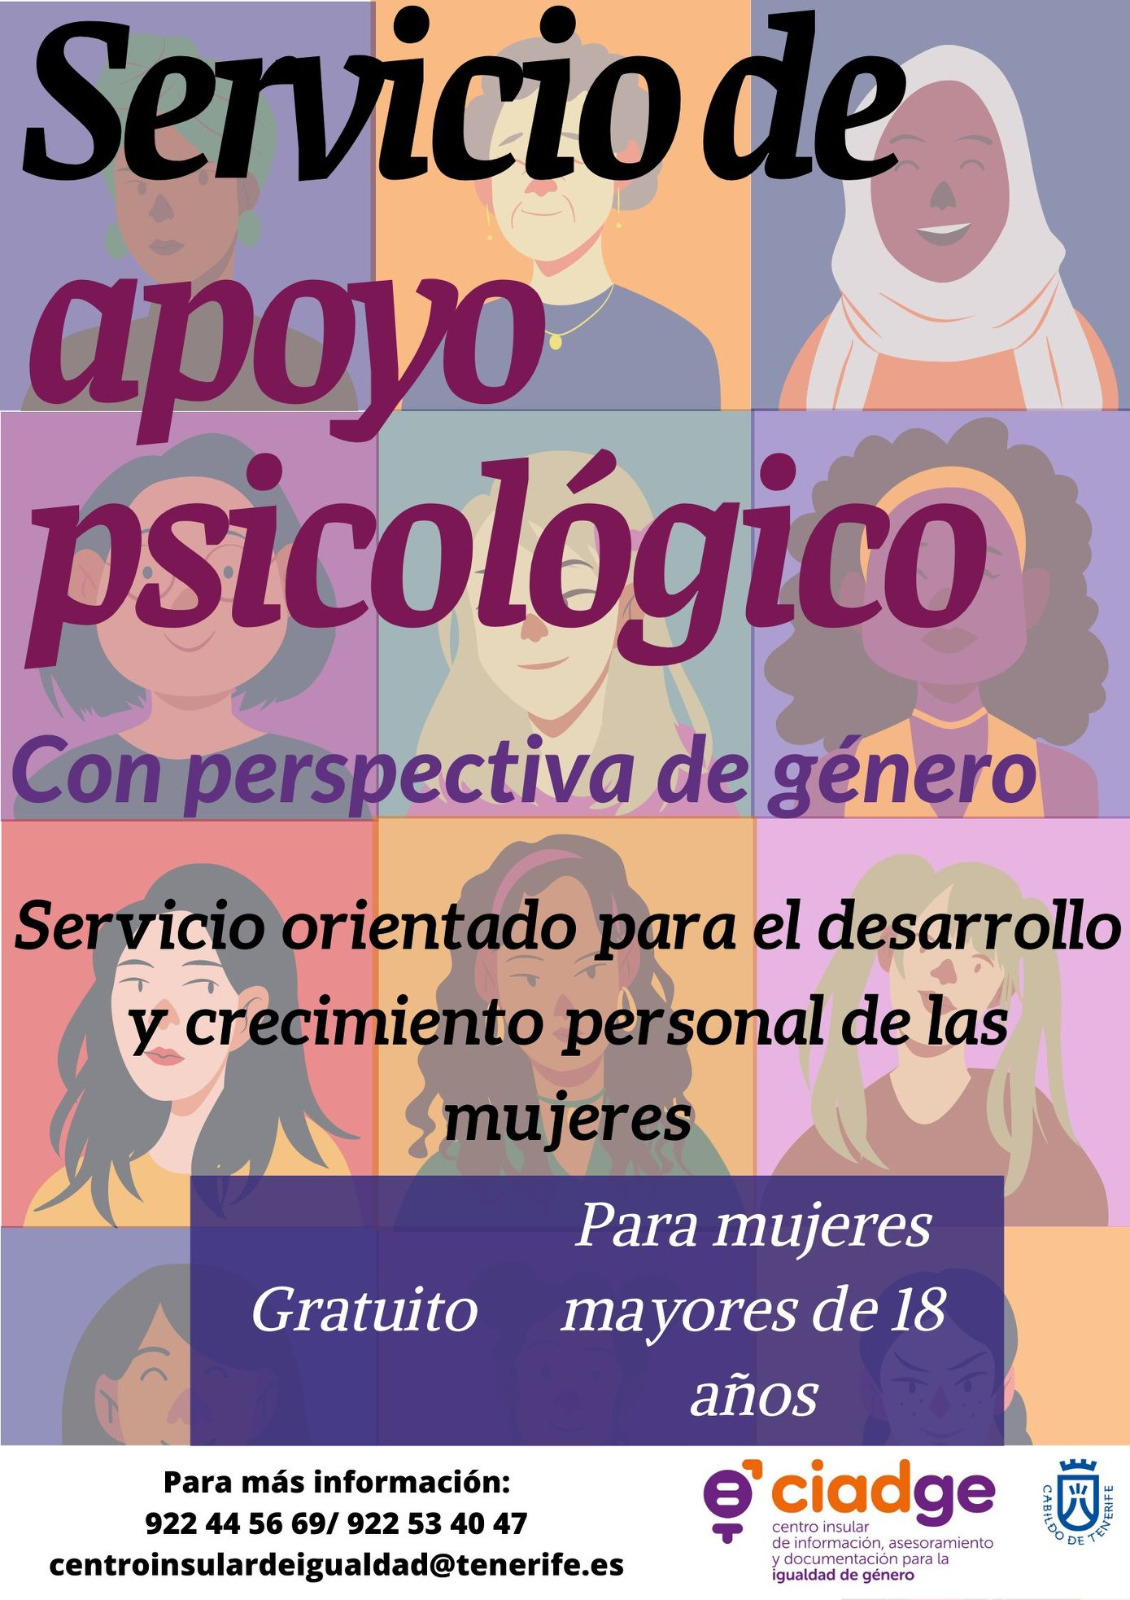 Servicio de apoyo psicológico con perspectiva de género